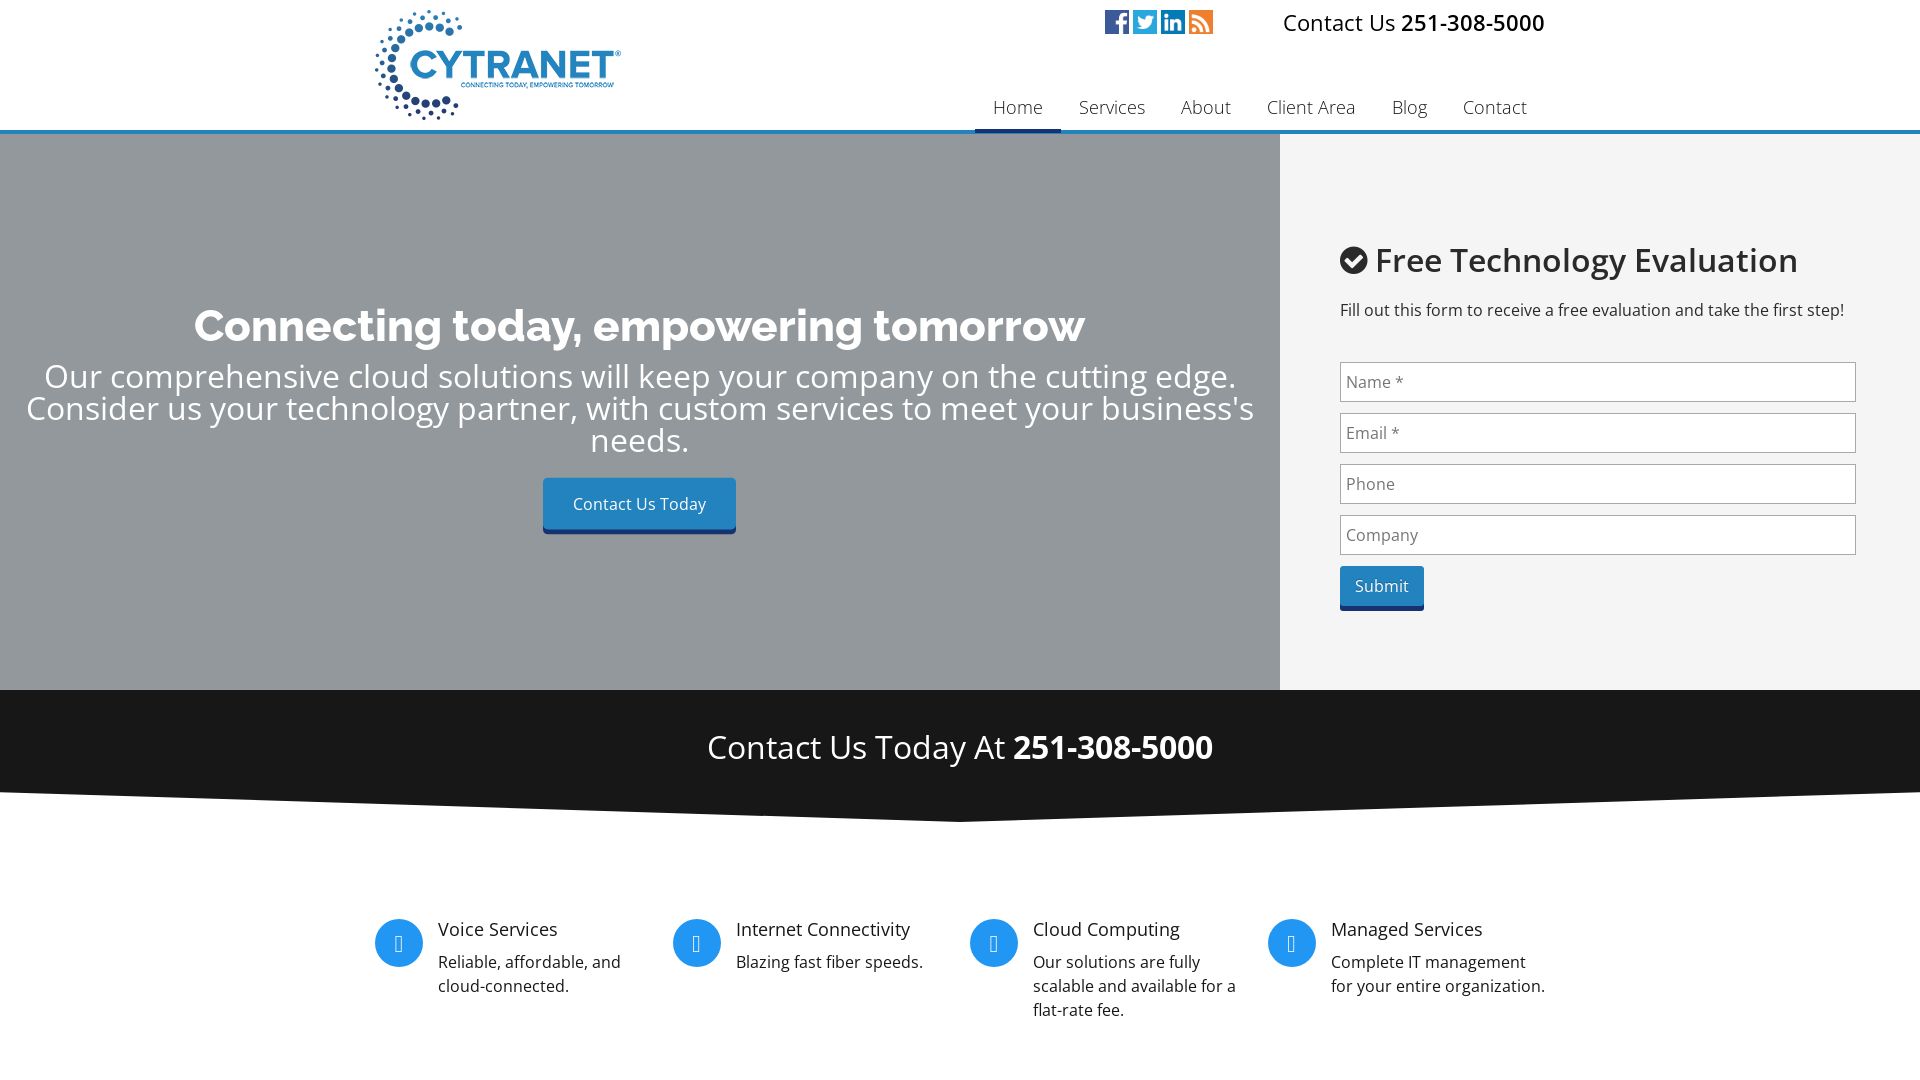 État du site web cytranet.com est   EN LIGNE